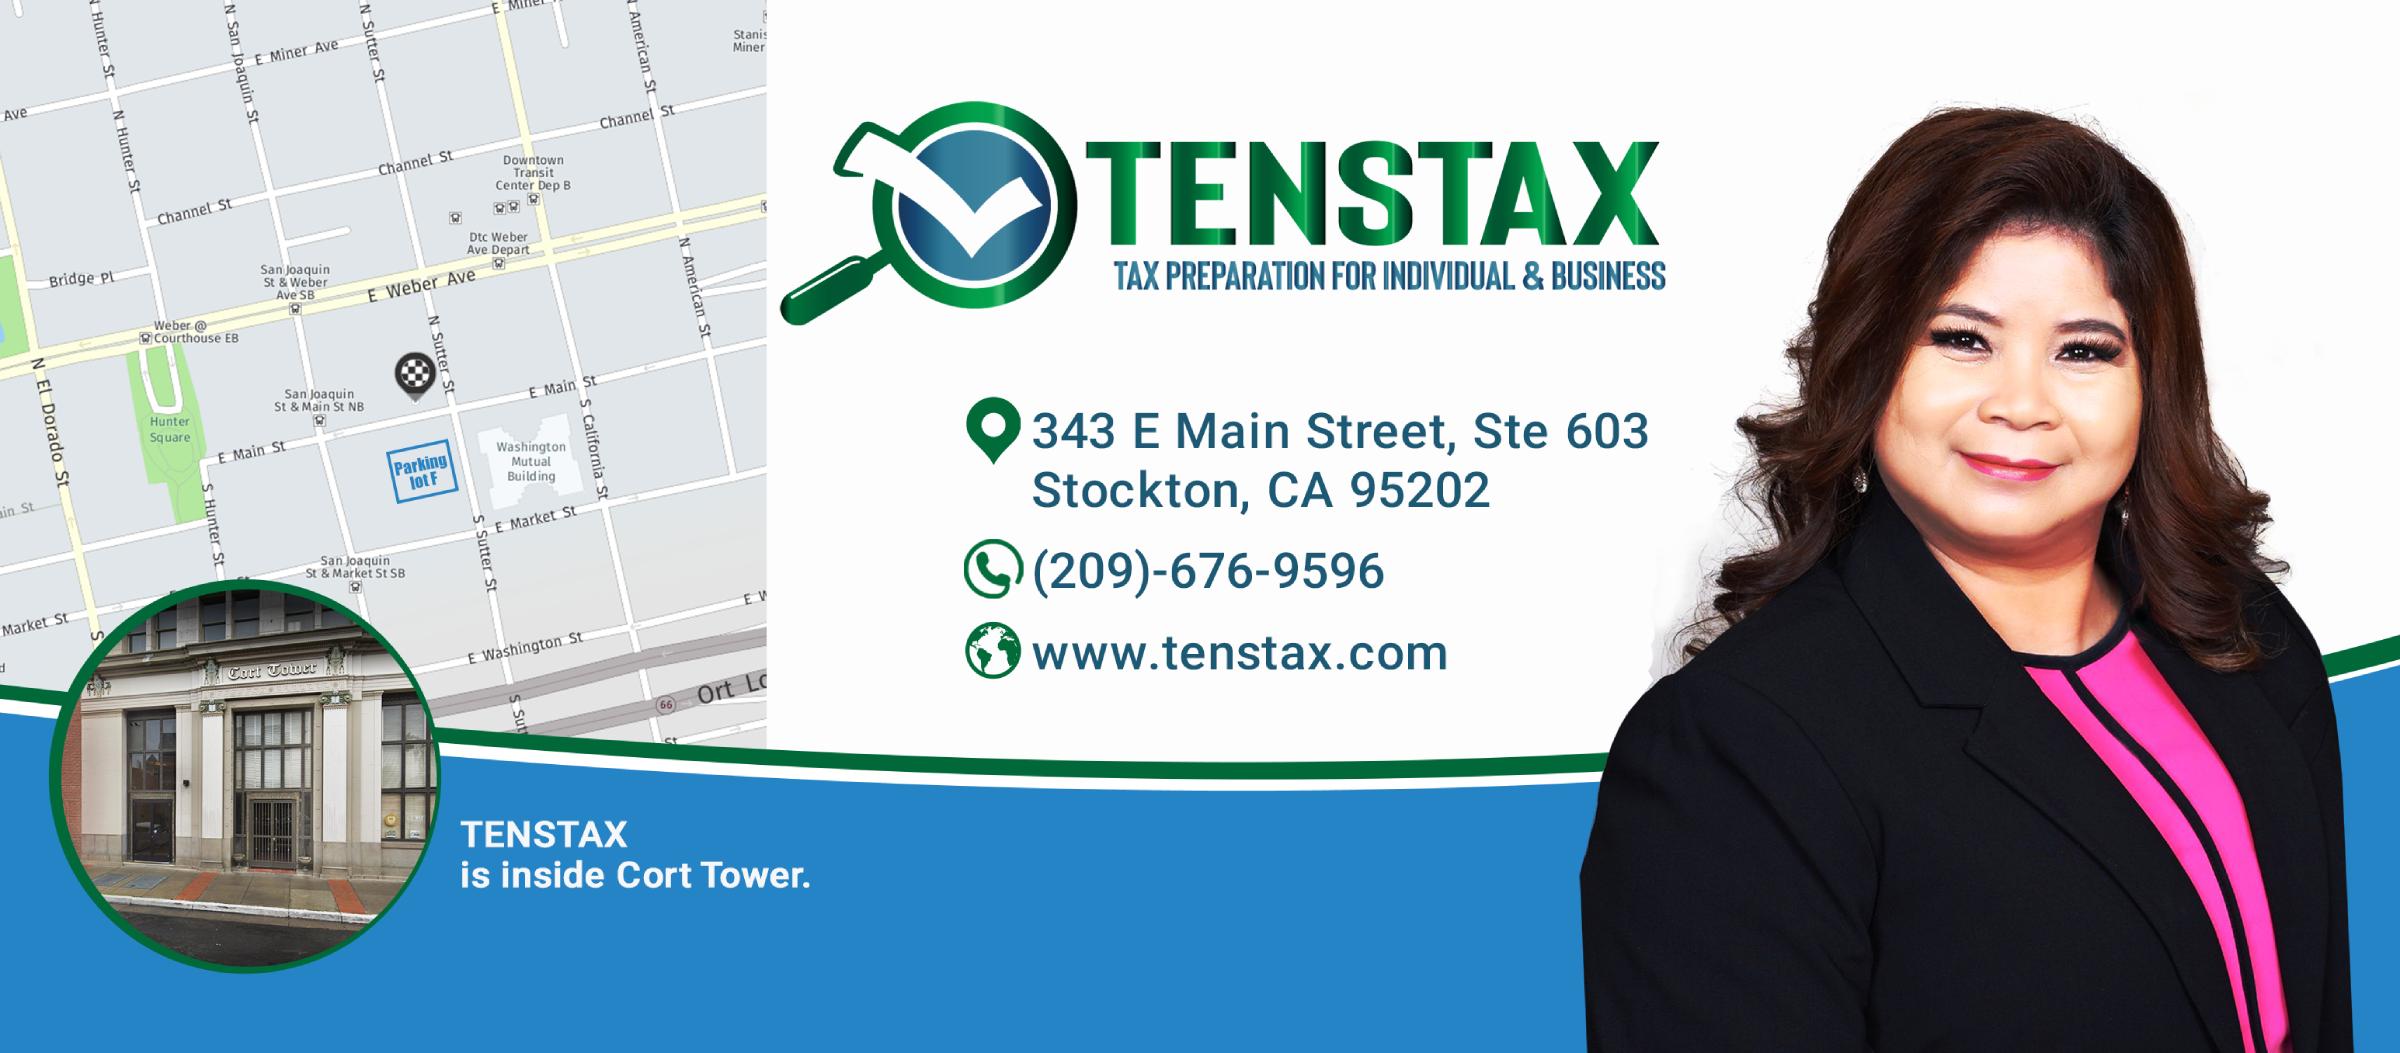 TENSTAX - Tax Service